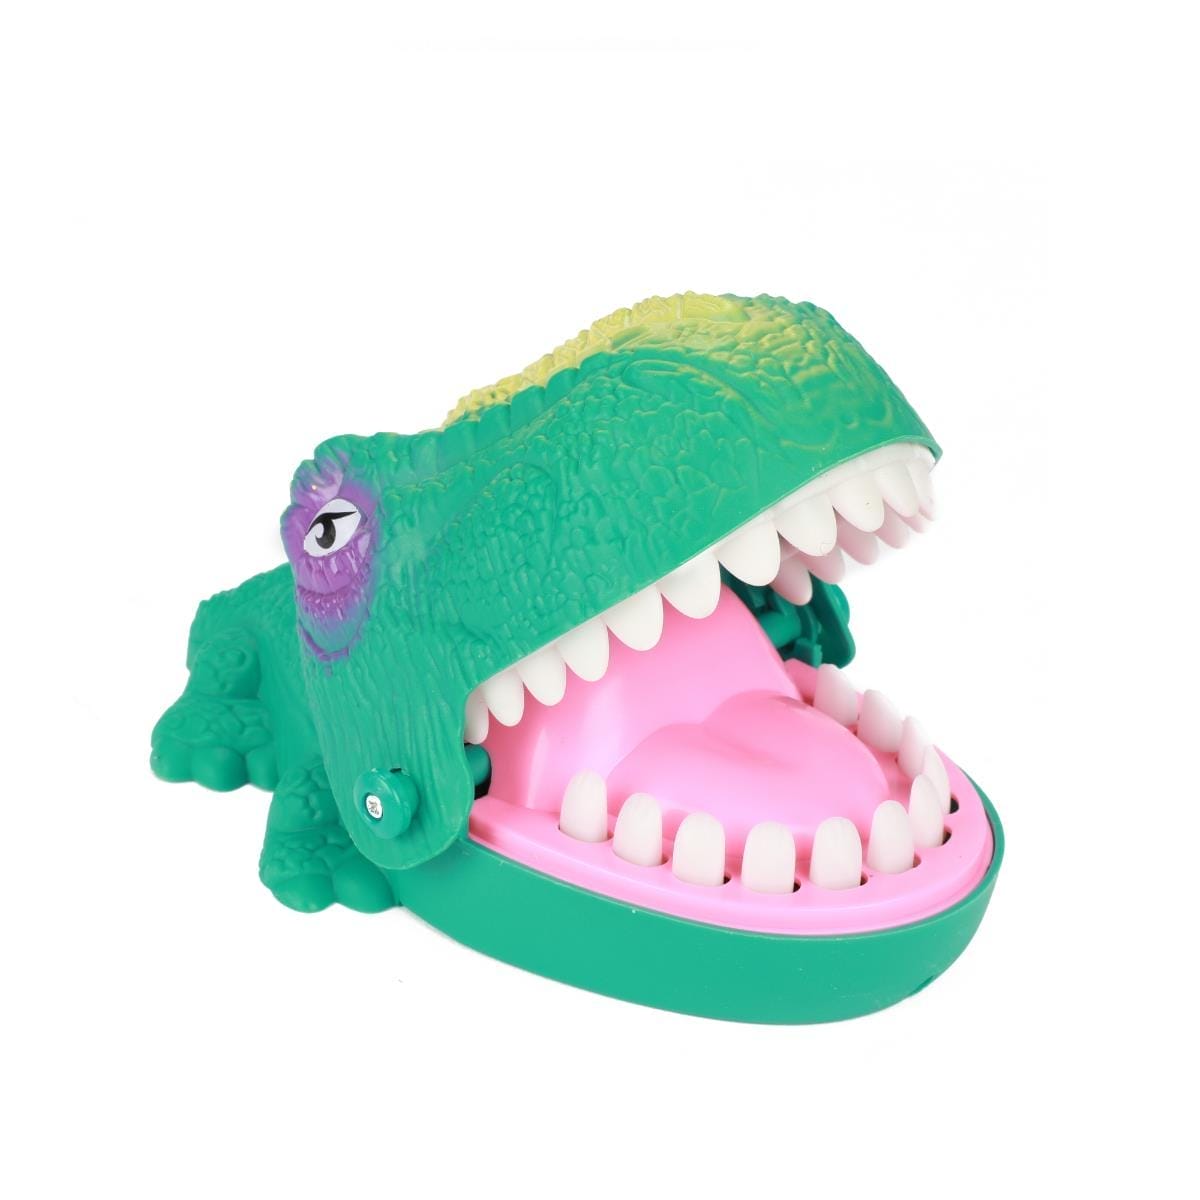 Jogo Dinossauro Perigoso ⋆ Brinquedos para Natal